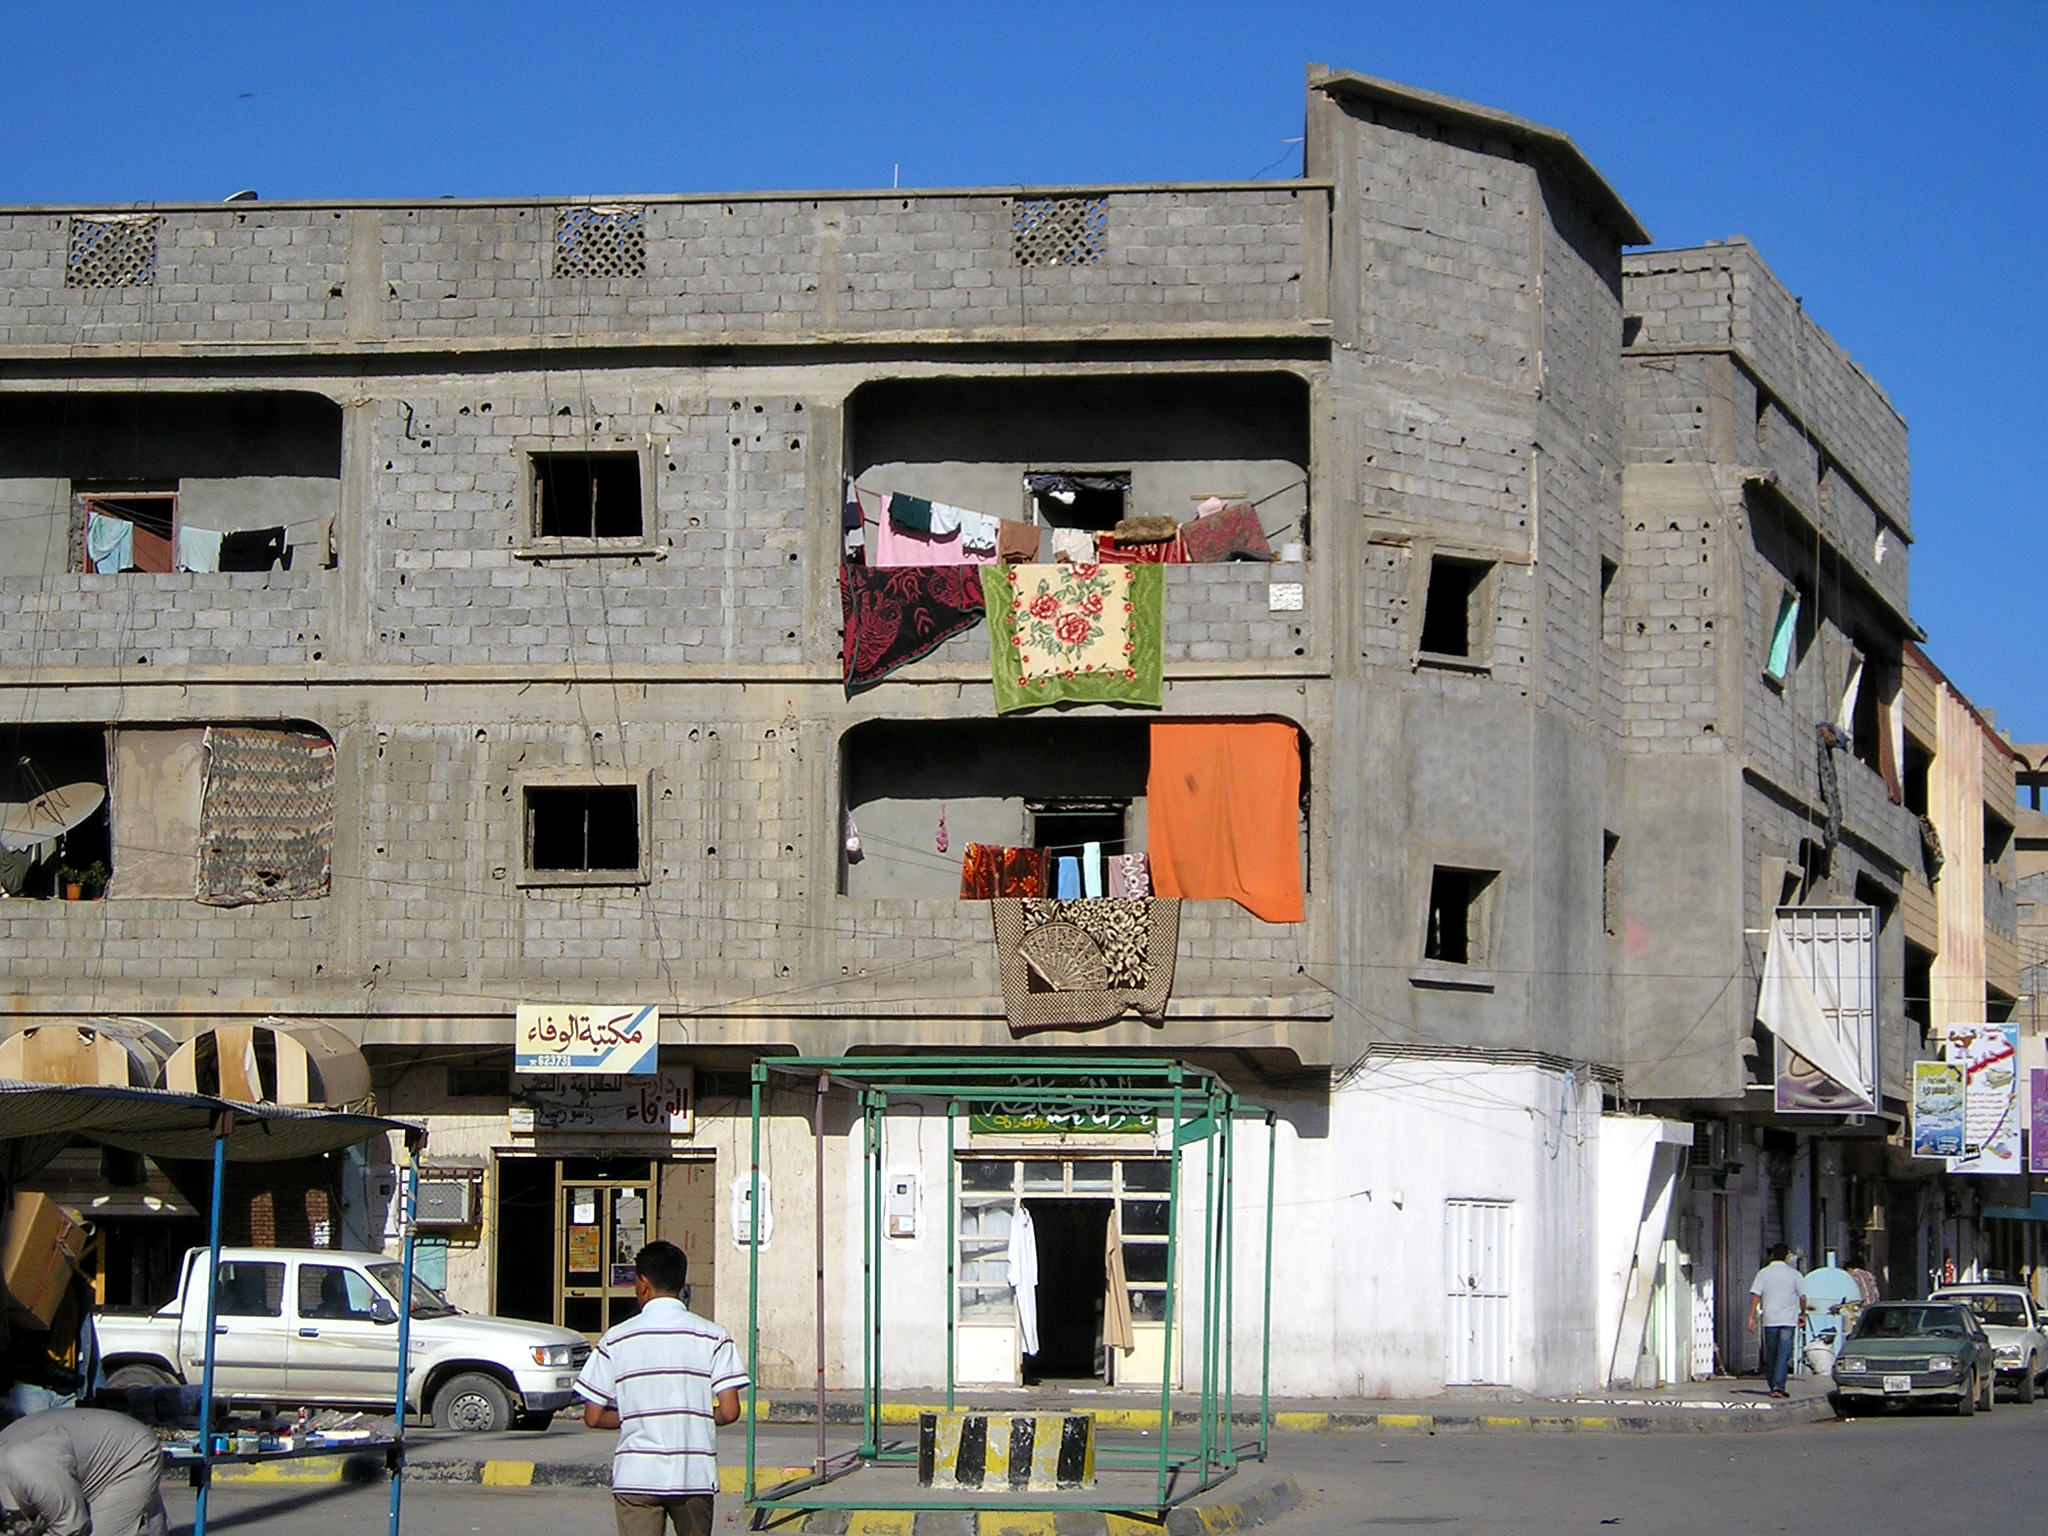 Street scene in Zliten, a town in north-west Libya